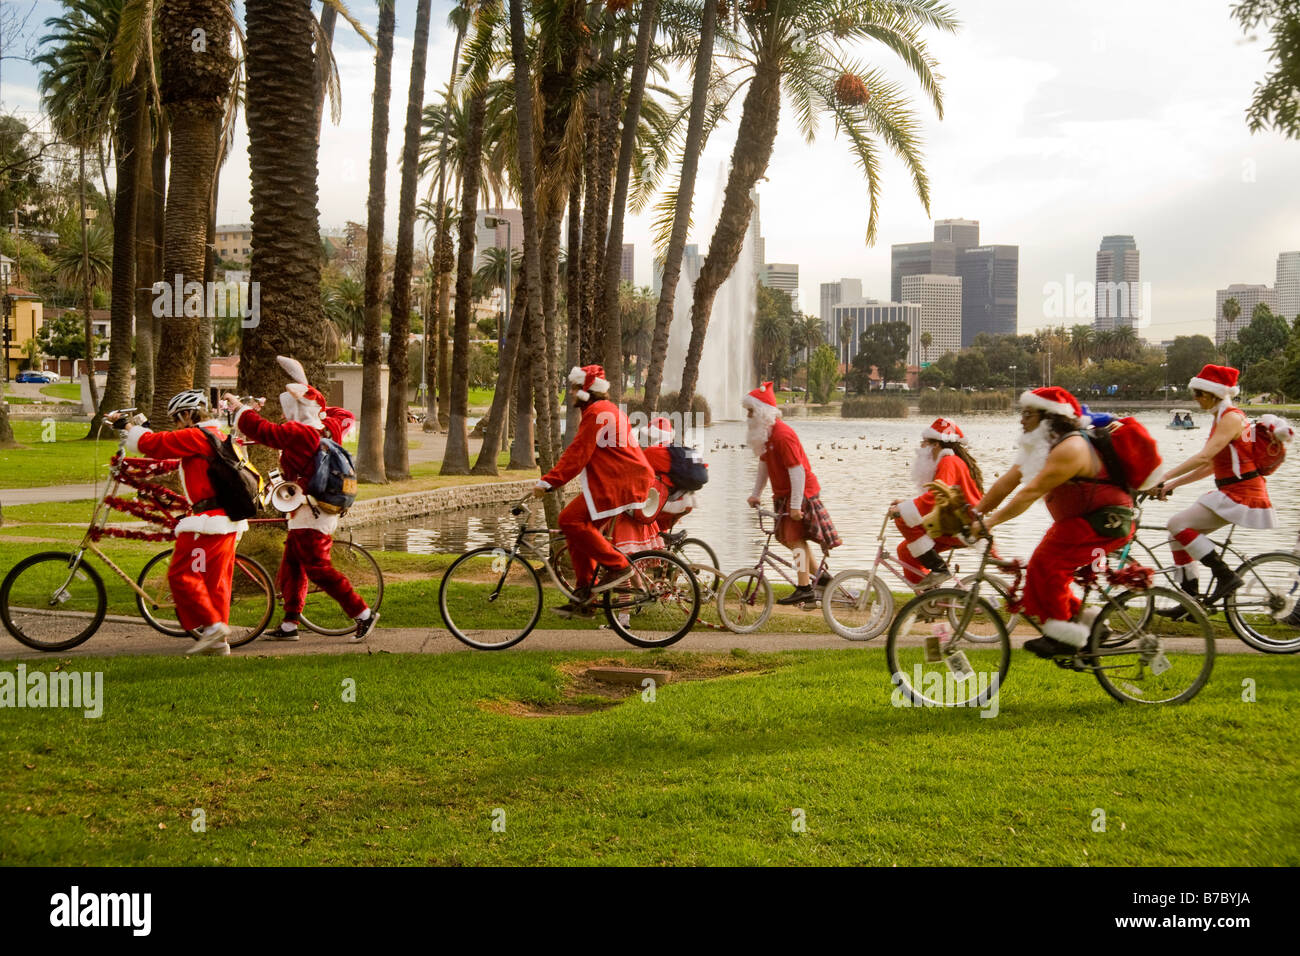 La gente en trajes de Santa Claus en bicicleta en Los Angeles Foto de stock